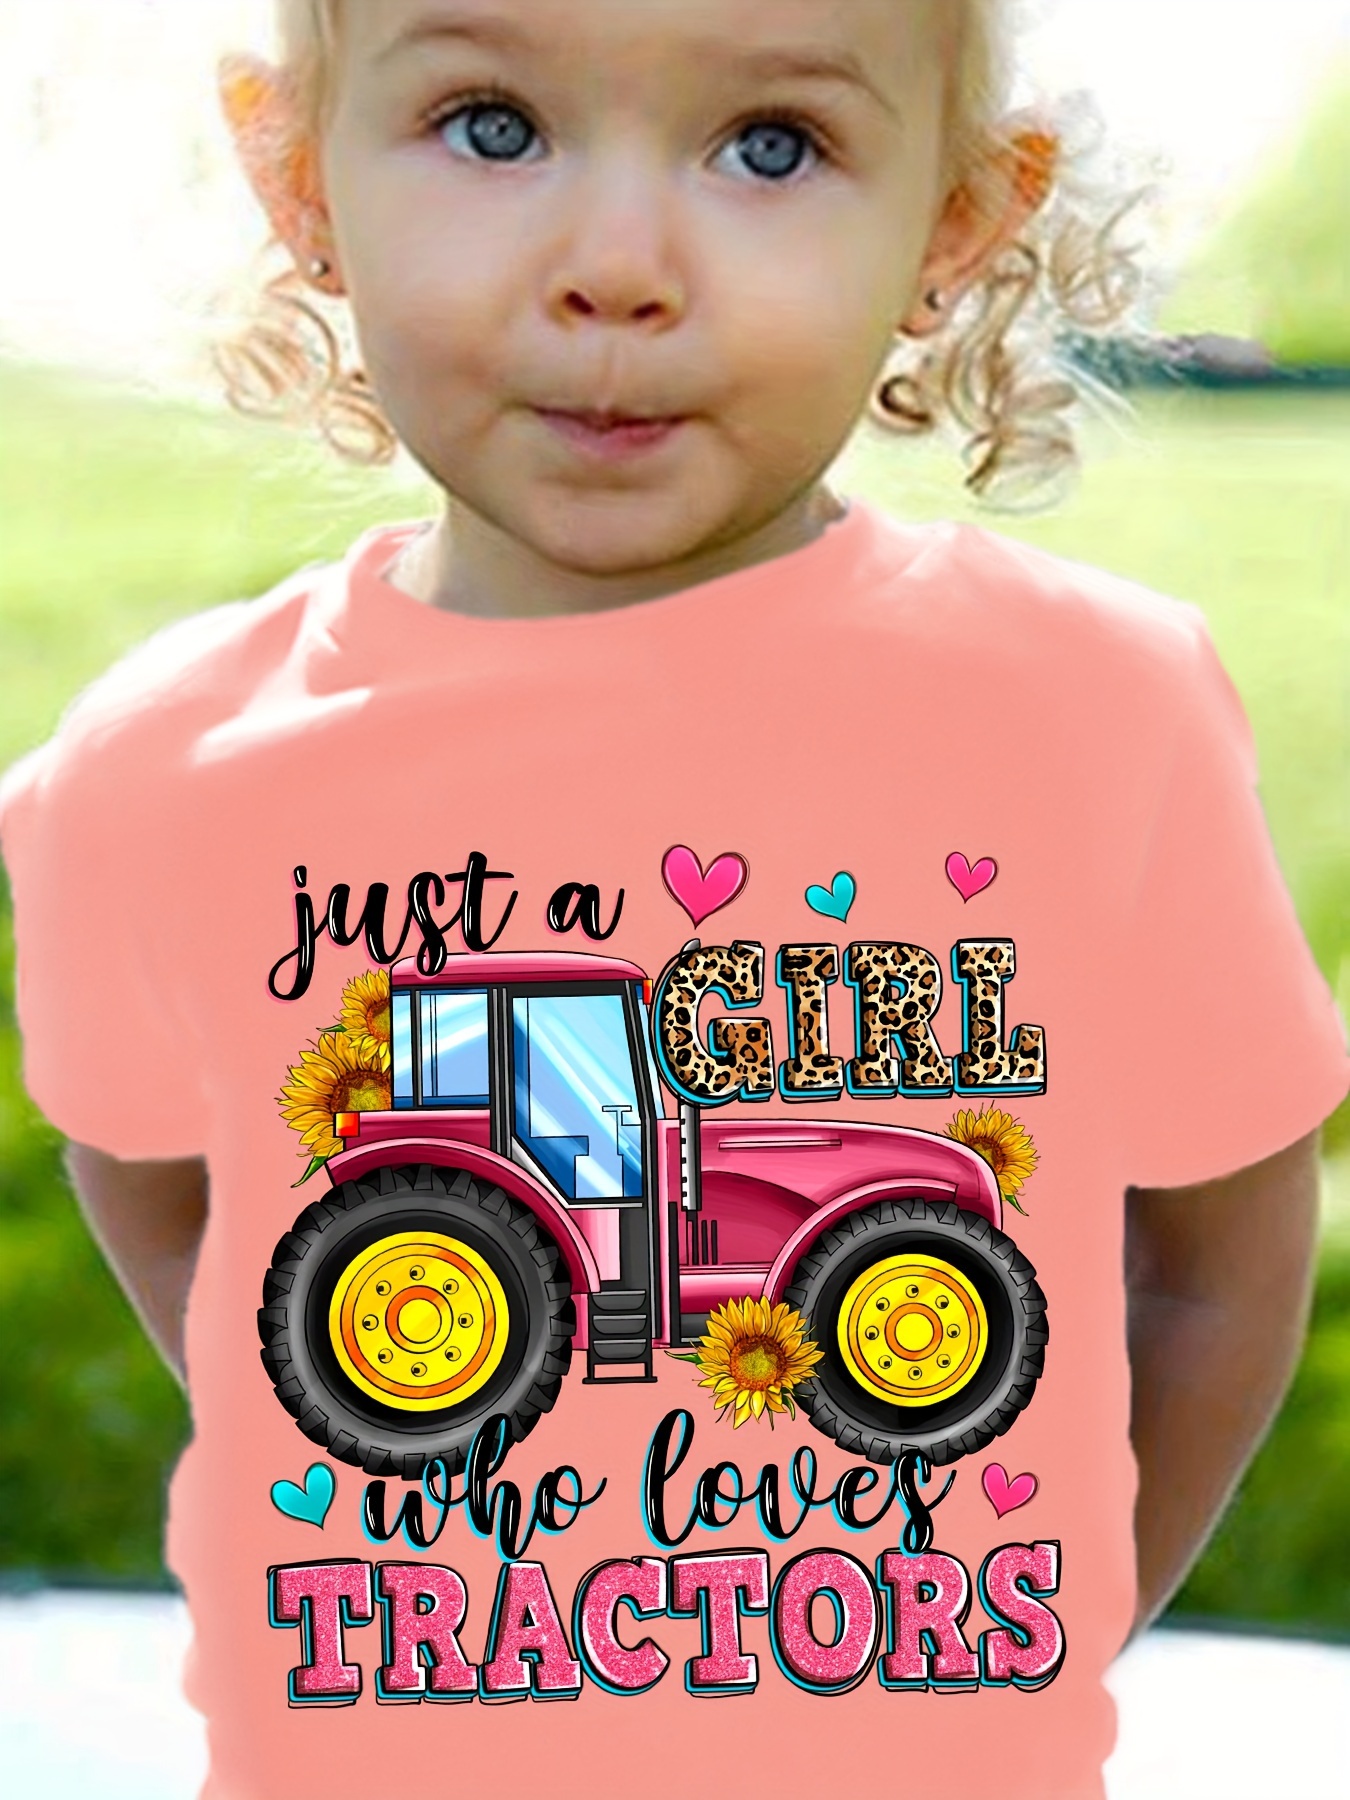 Tracteur enfants de 3 ans' T-shirt sport Enfant